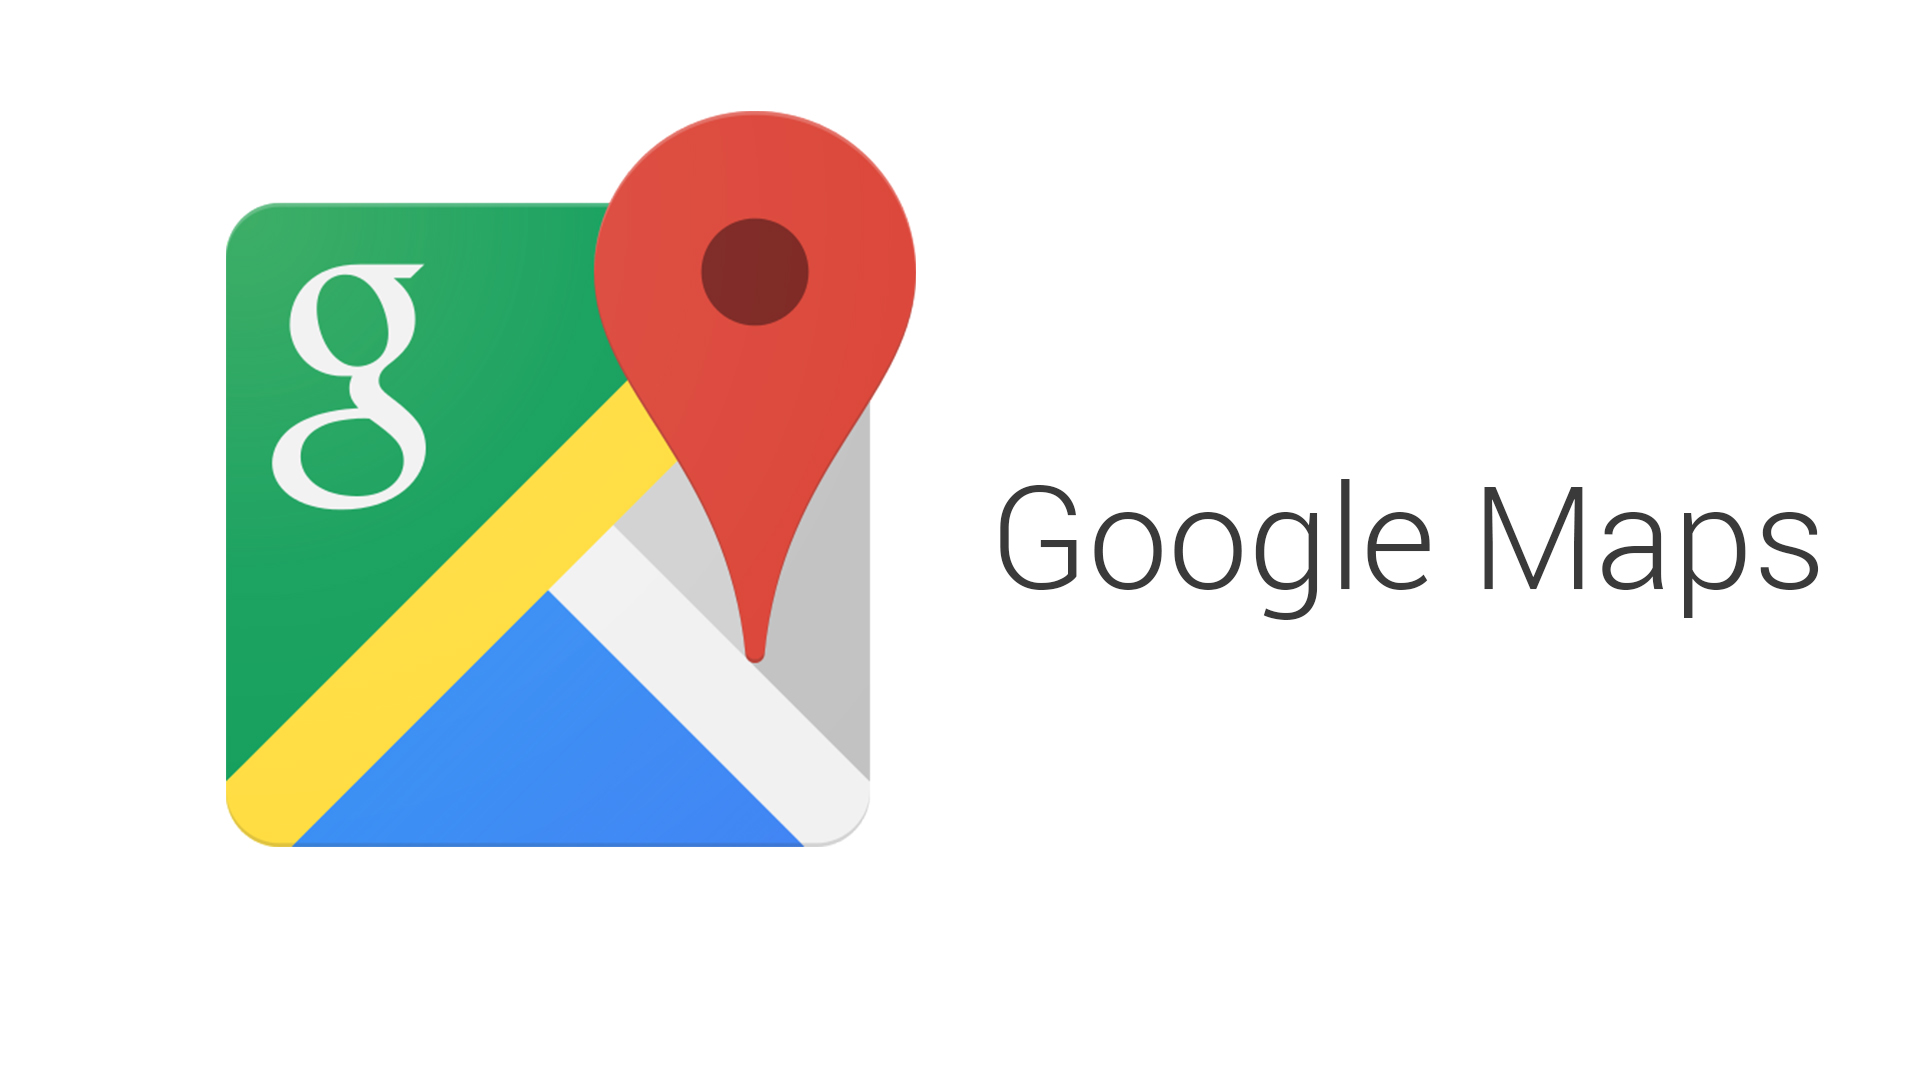 Google Maps ще ви позволи да споделяте местоположението си и да виждате това на вашите приятели